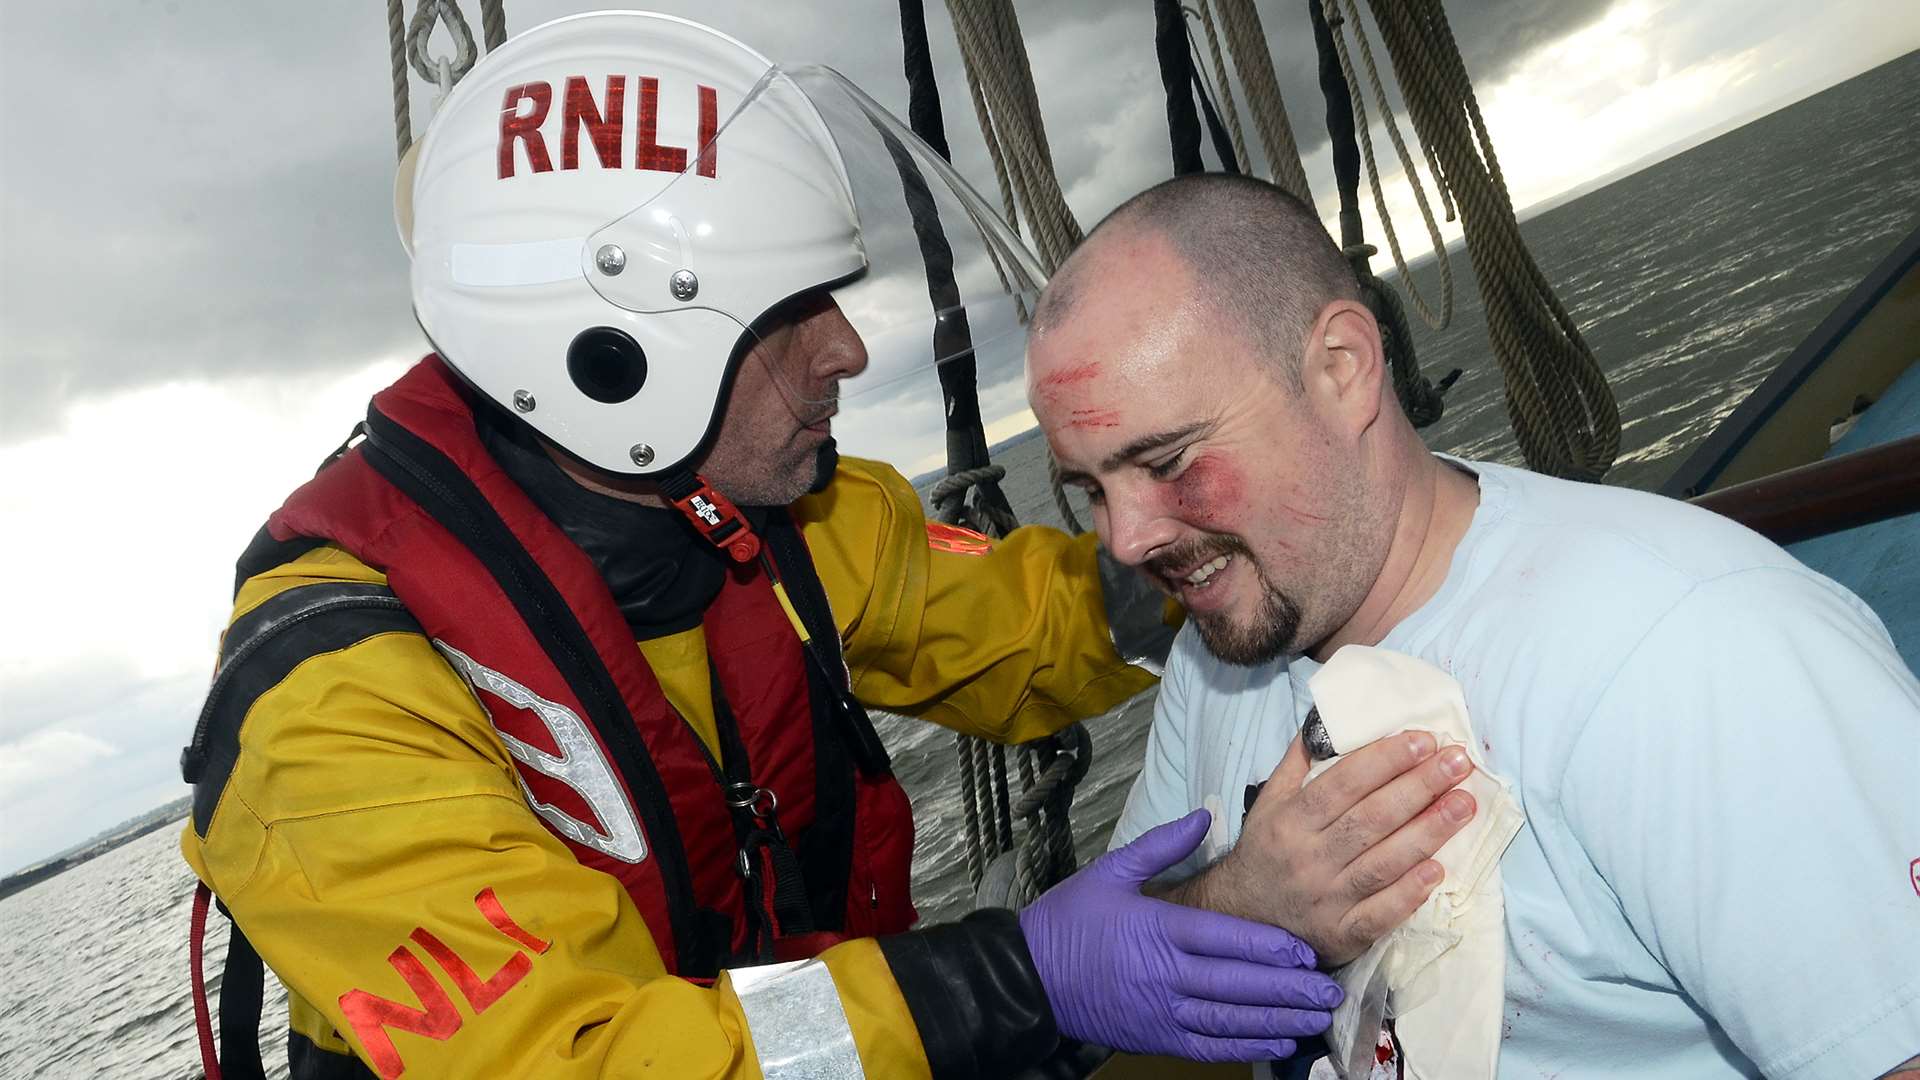 Lifeboat volunteer Matt Bate helps Scott Goudie during the exercise